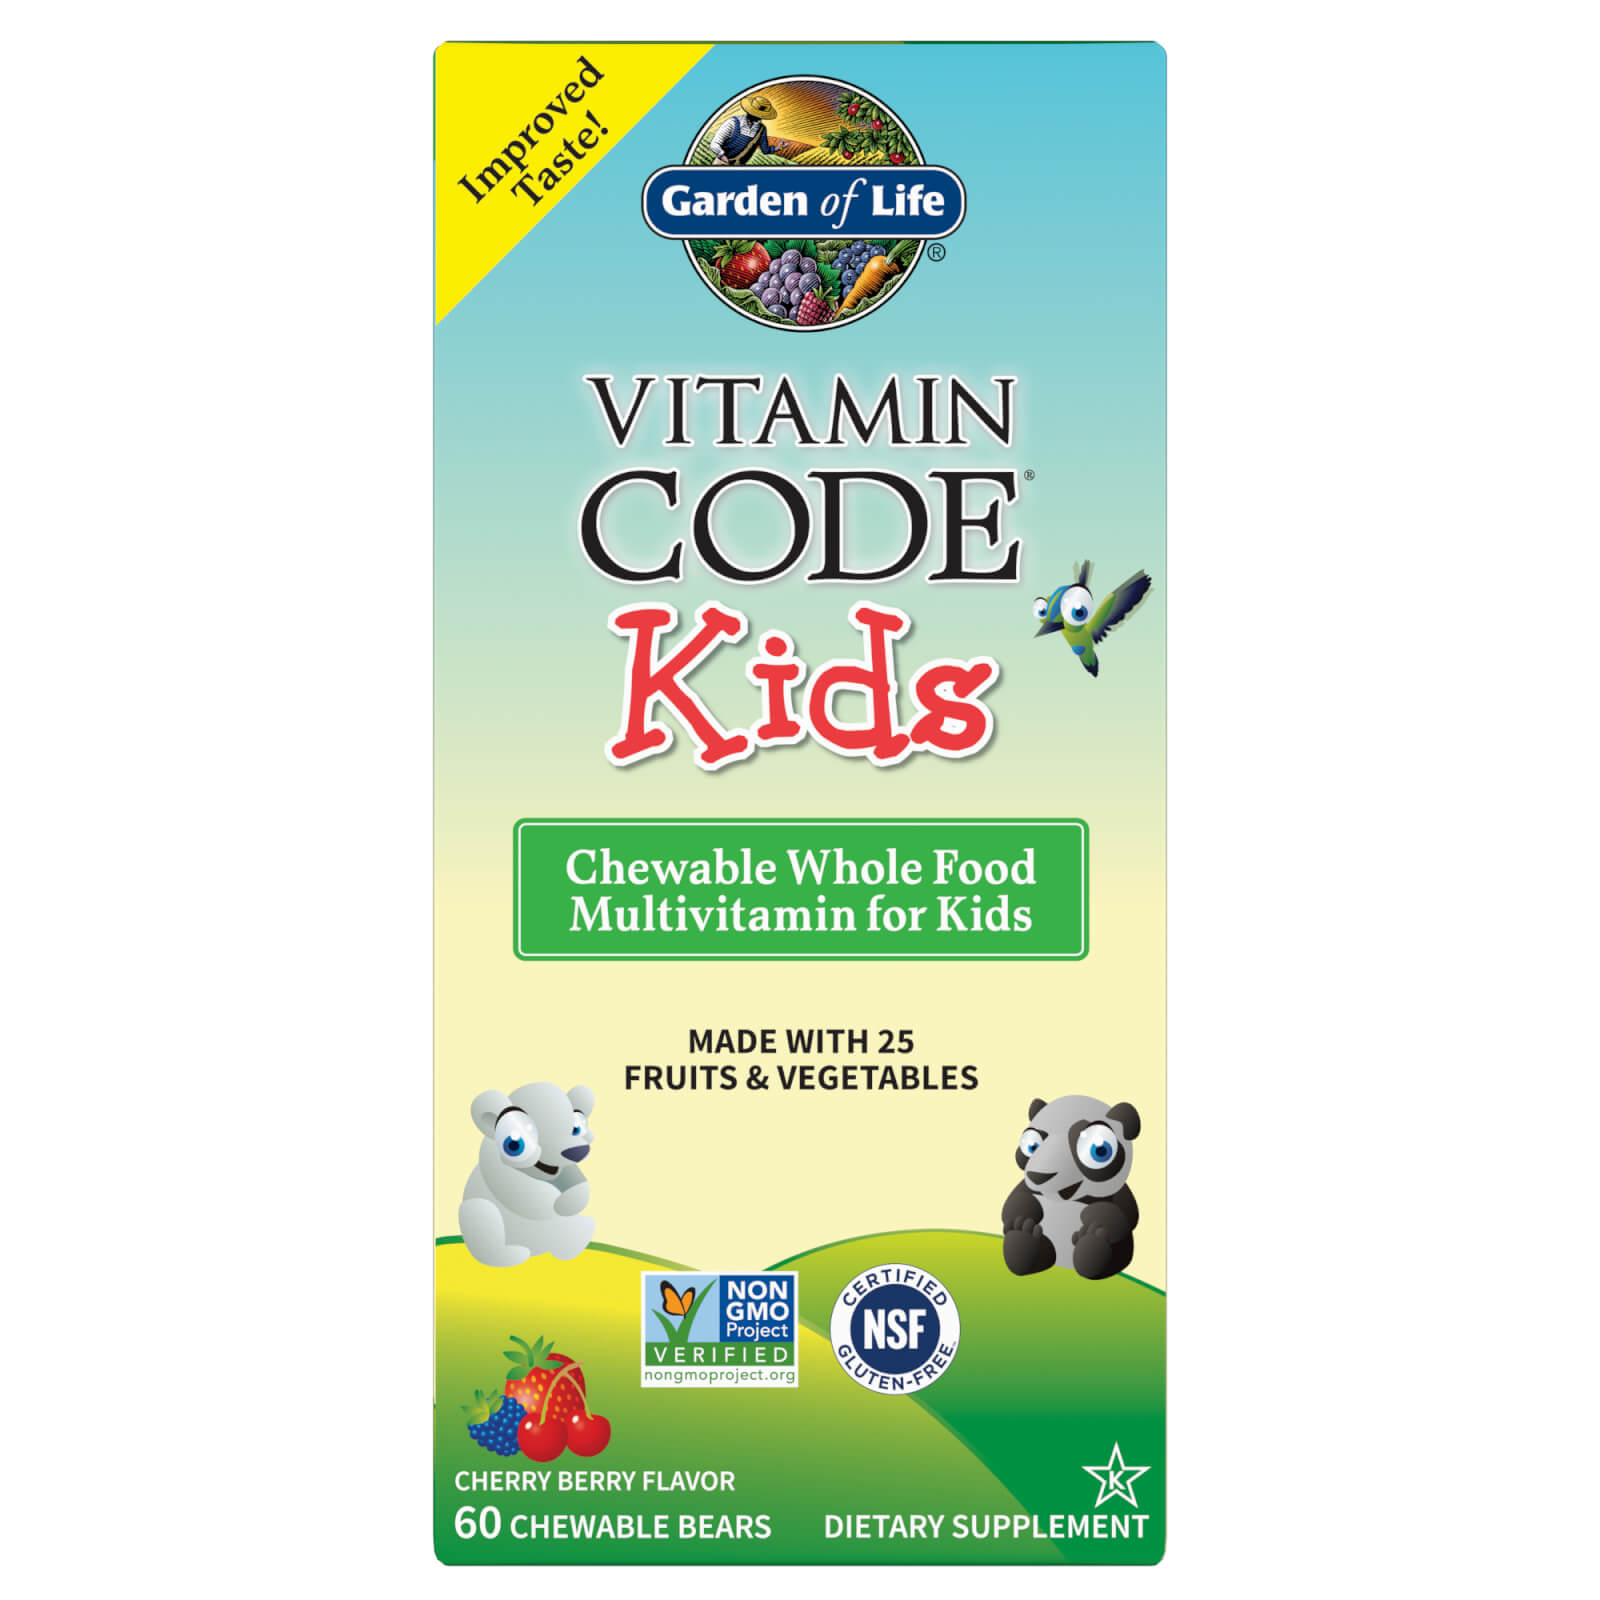 Garden of Life Vitamin Code Kids Cherry Berry 60ct Chewables